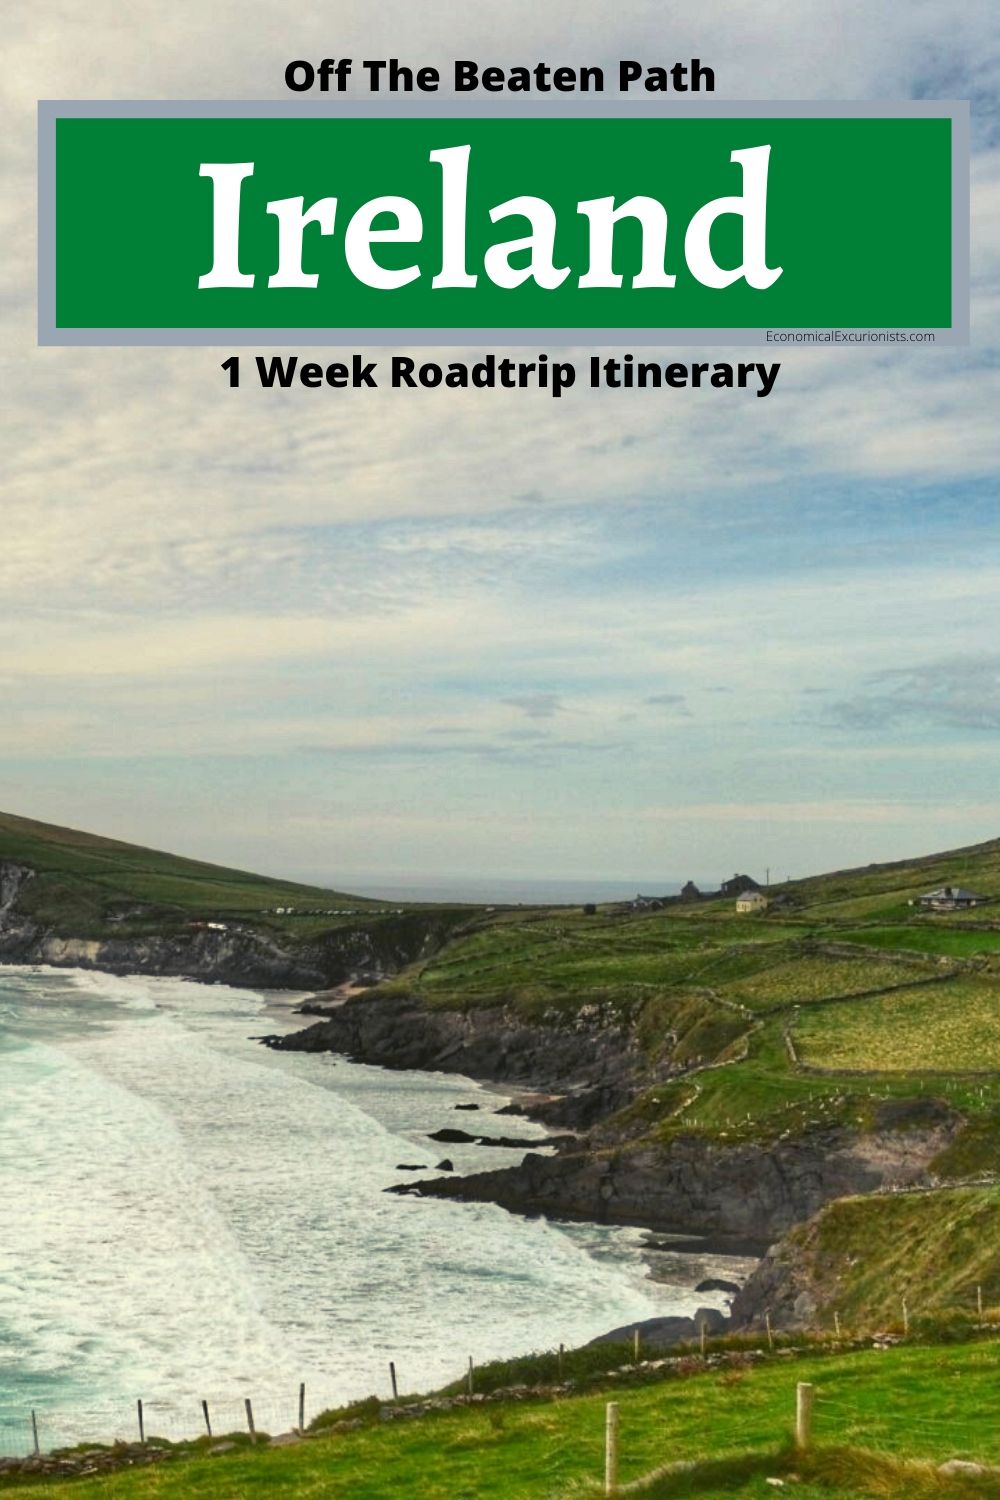 The perfect Ireland itinerary 7 Days Driving around Ireland itinerary